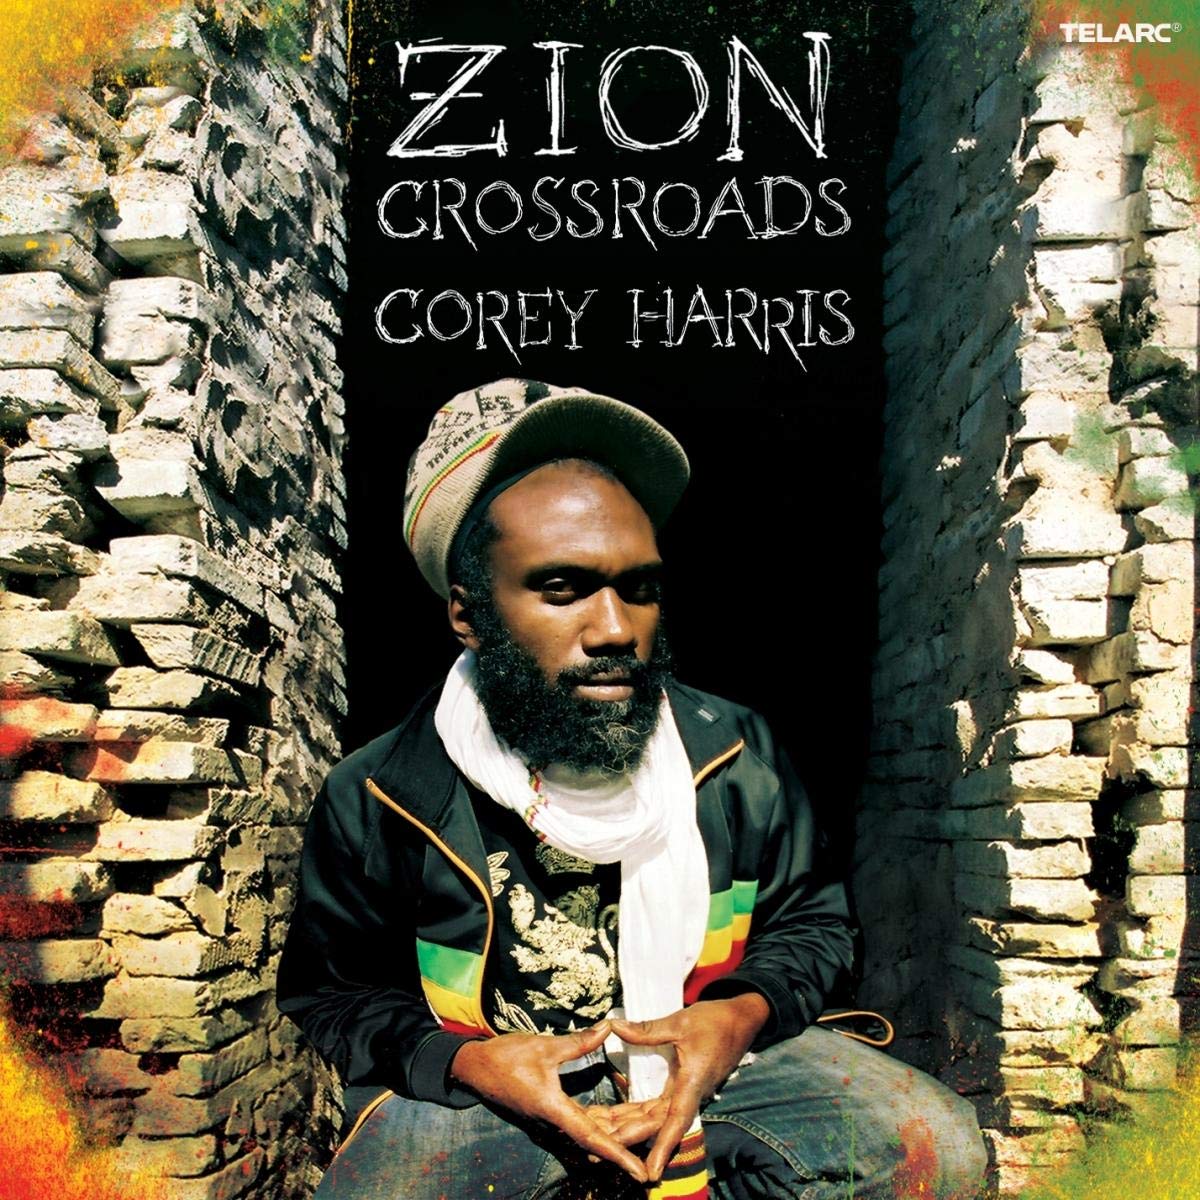 COREY HARRIS: Zion Crossroads